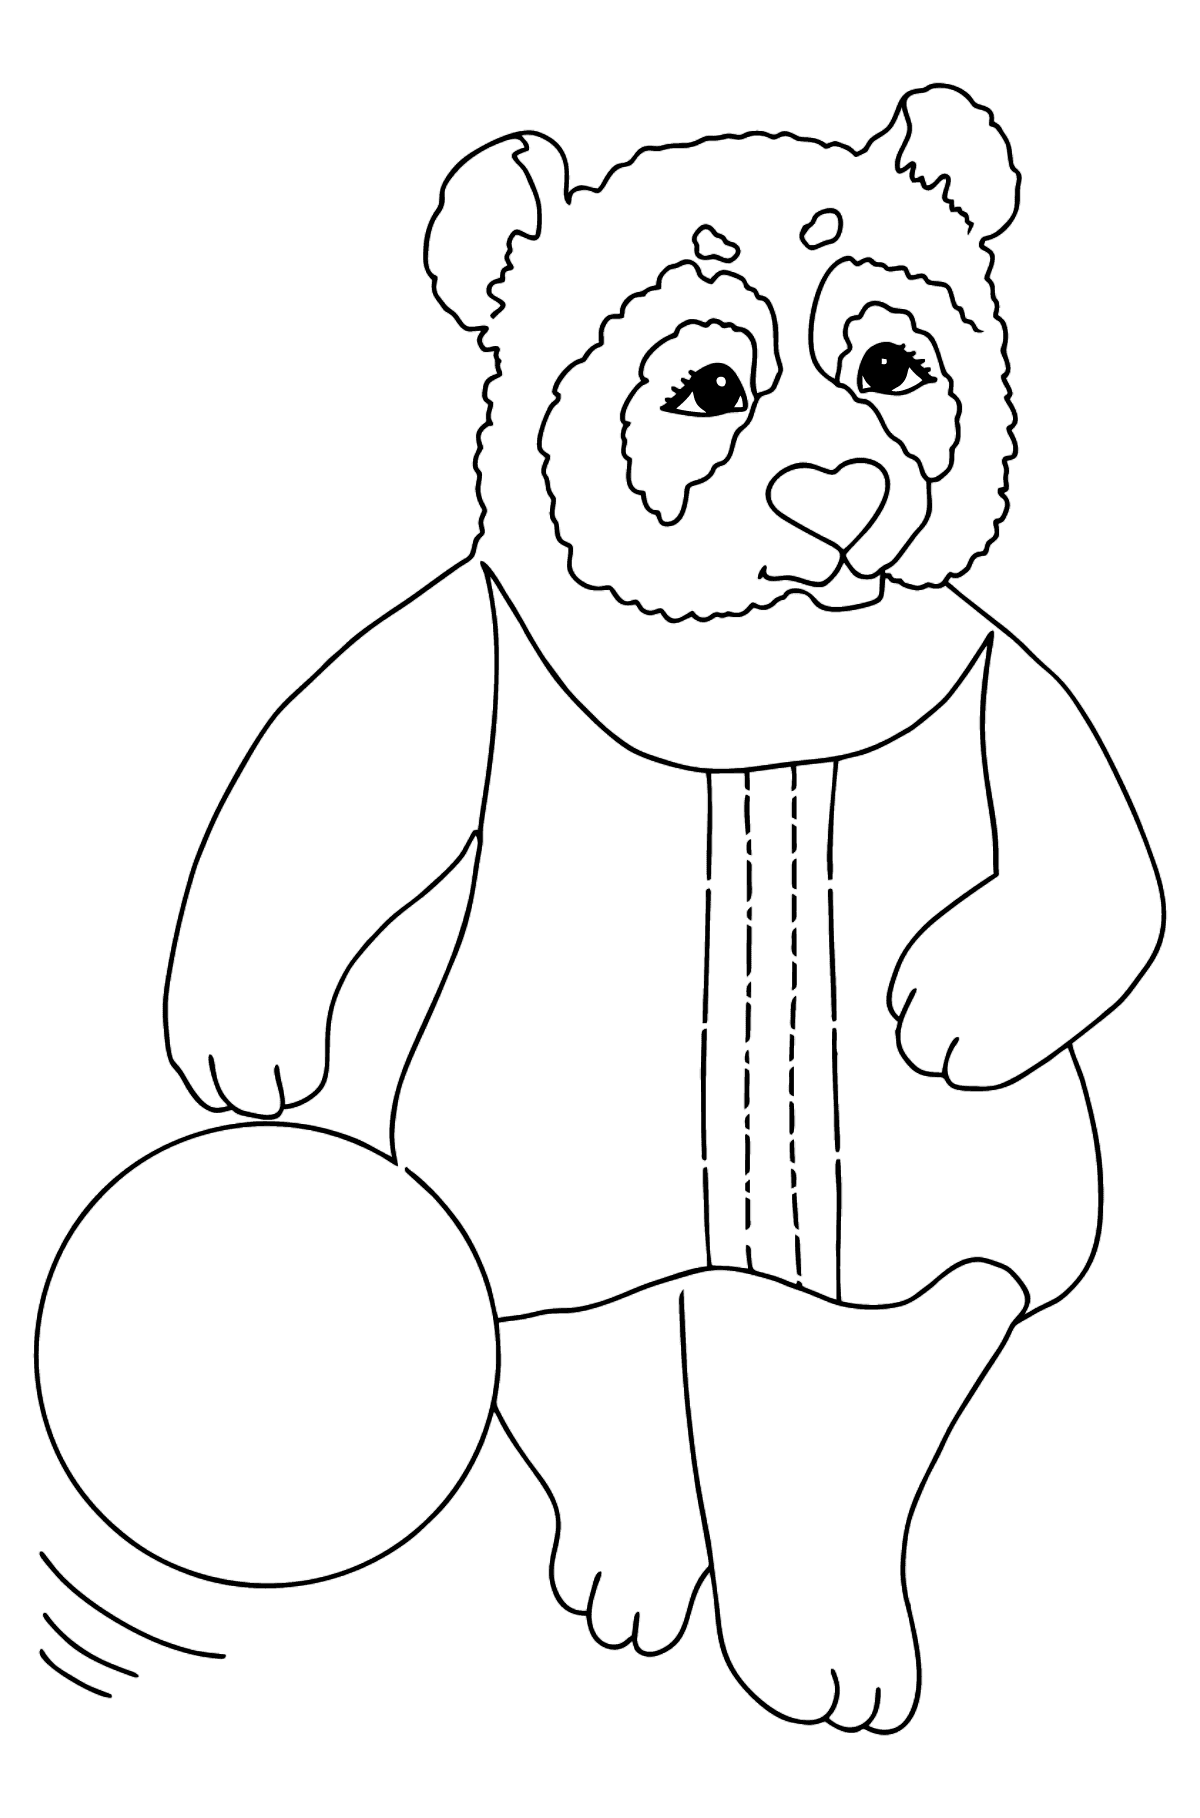 Coloriage Panda Pour Bébés (Simple) - Coloriages pour les Enfants